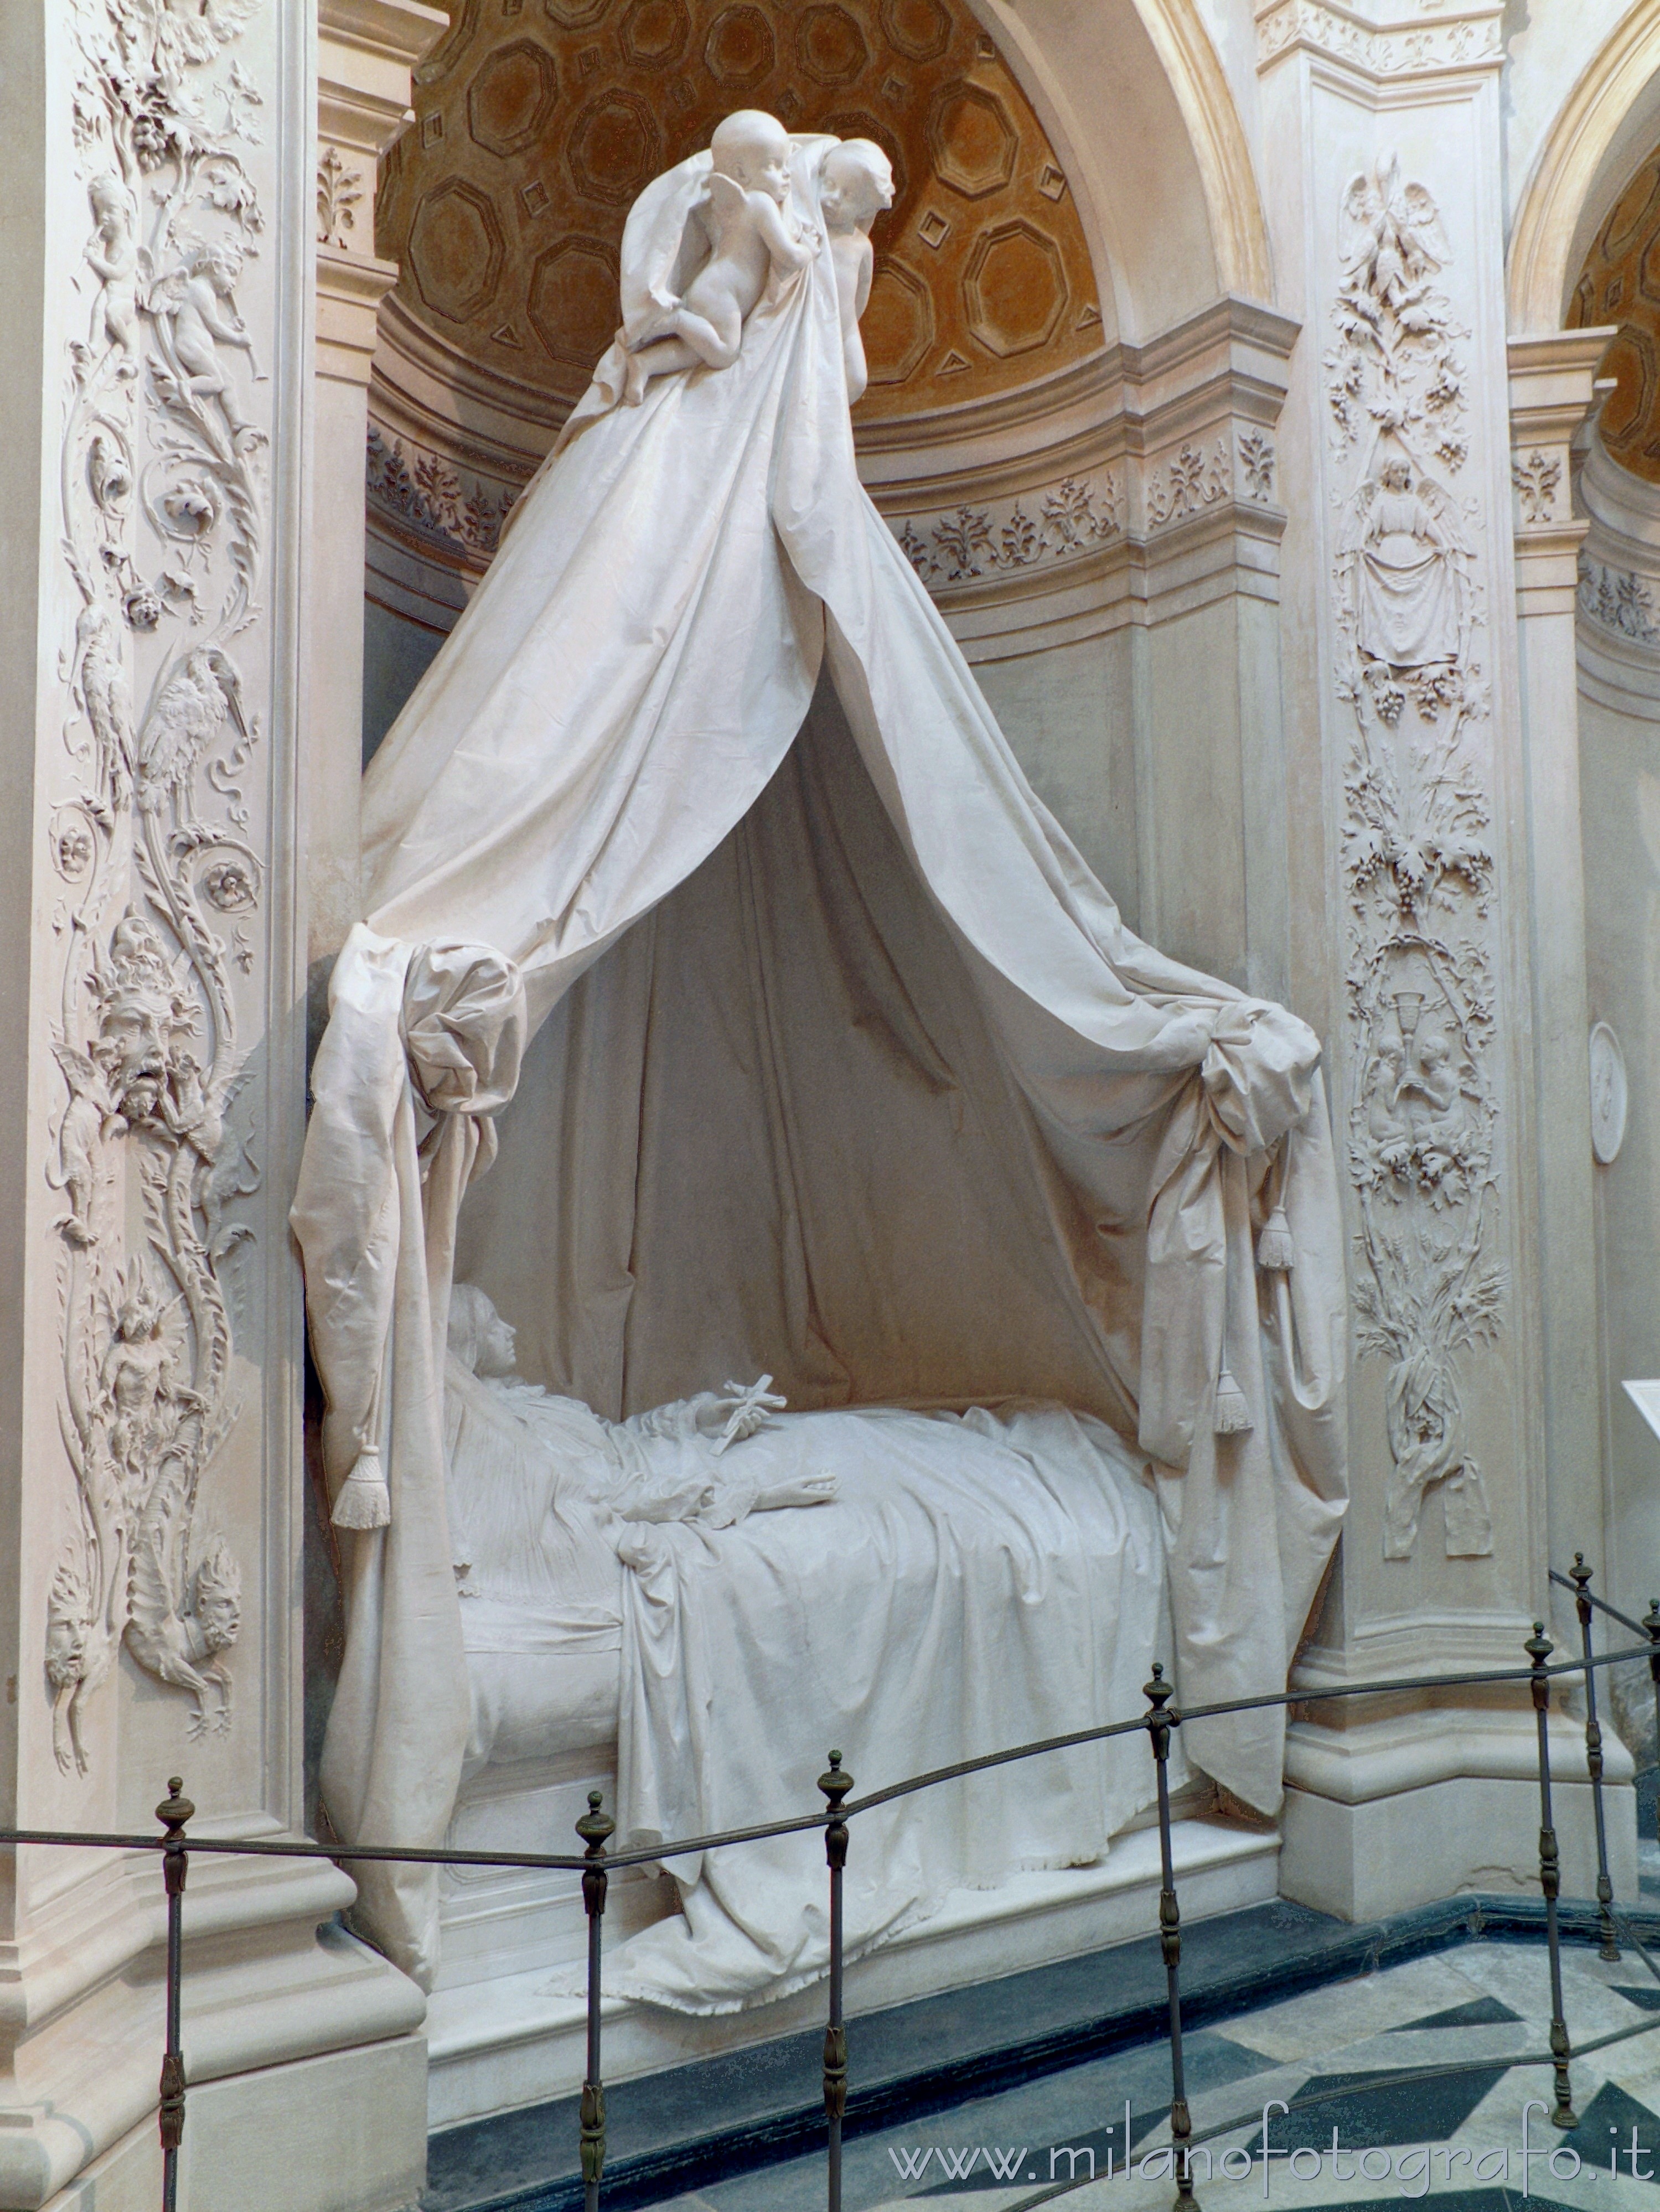 Arcore (Monza e Brianza): Monumento funebre a Maria Isimbardi nella Cappella Vela di Villa Borromeo d'Adda - Arcore (Monza e Brianza)